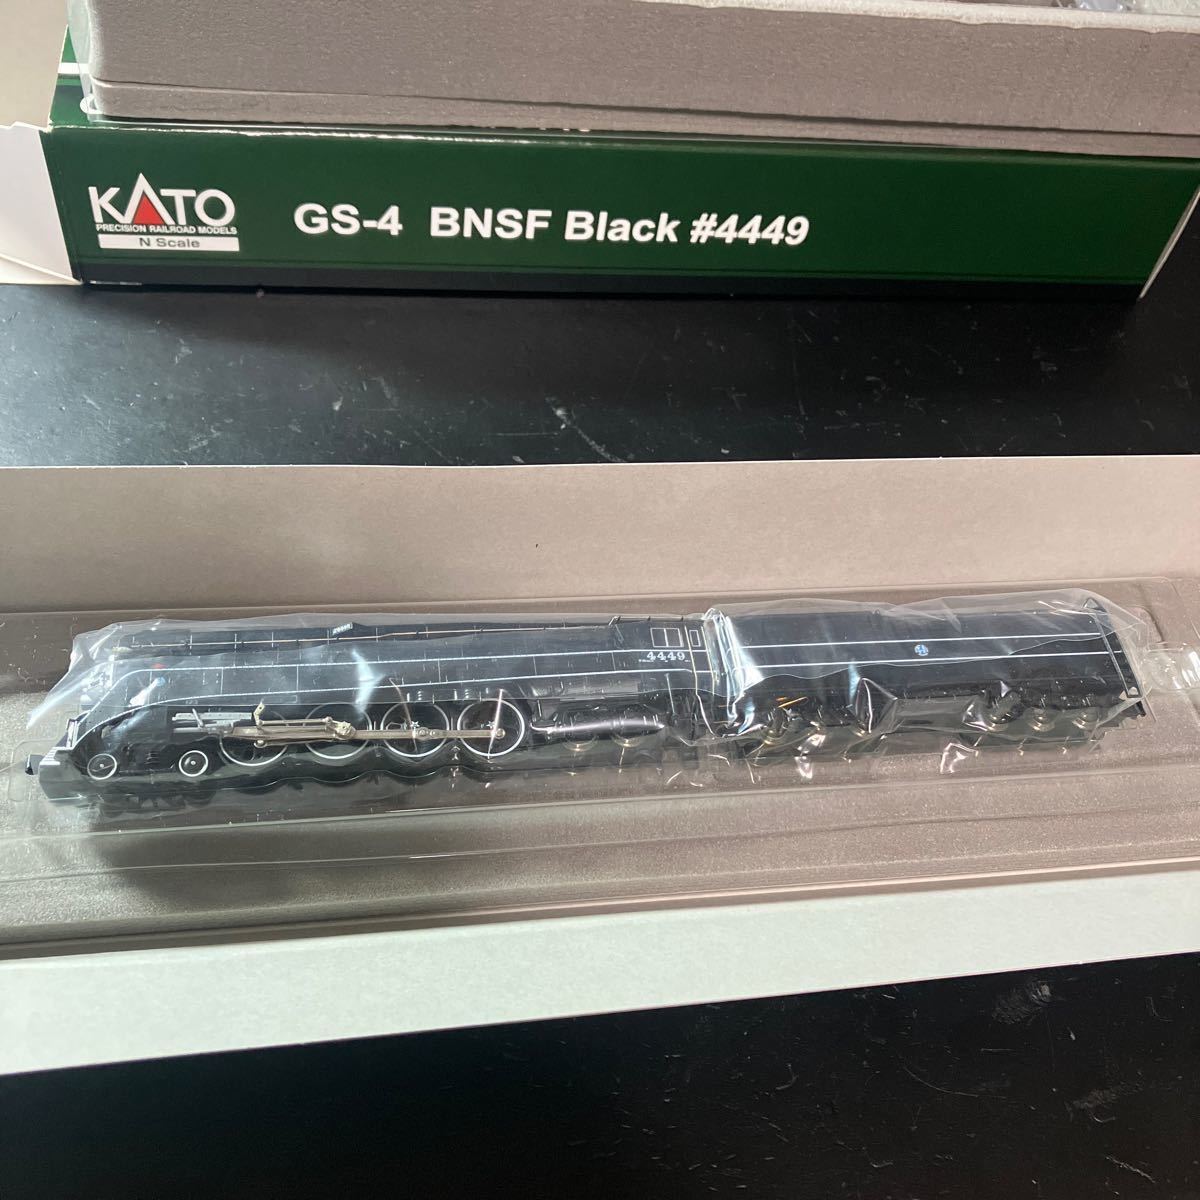 ホビセンカトー 126-0312 GS-4 BNSF Black #4449